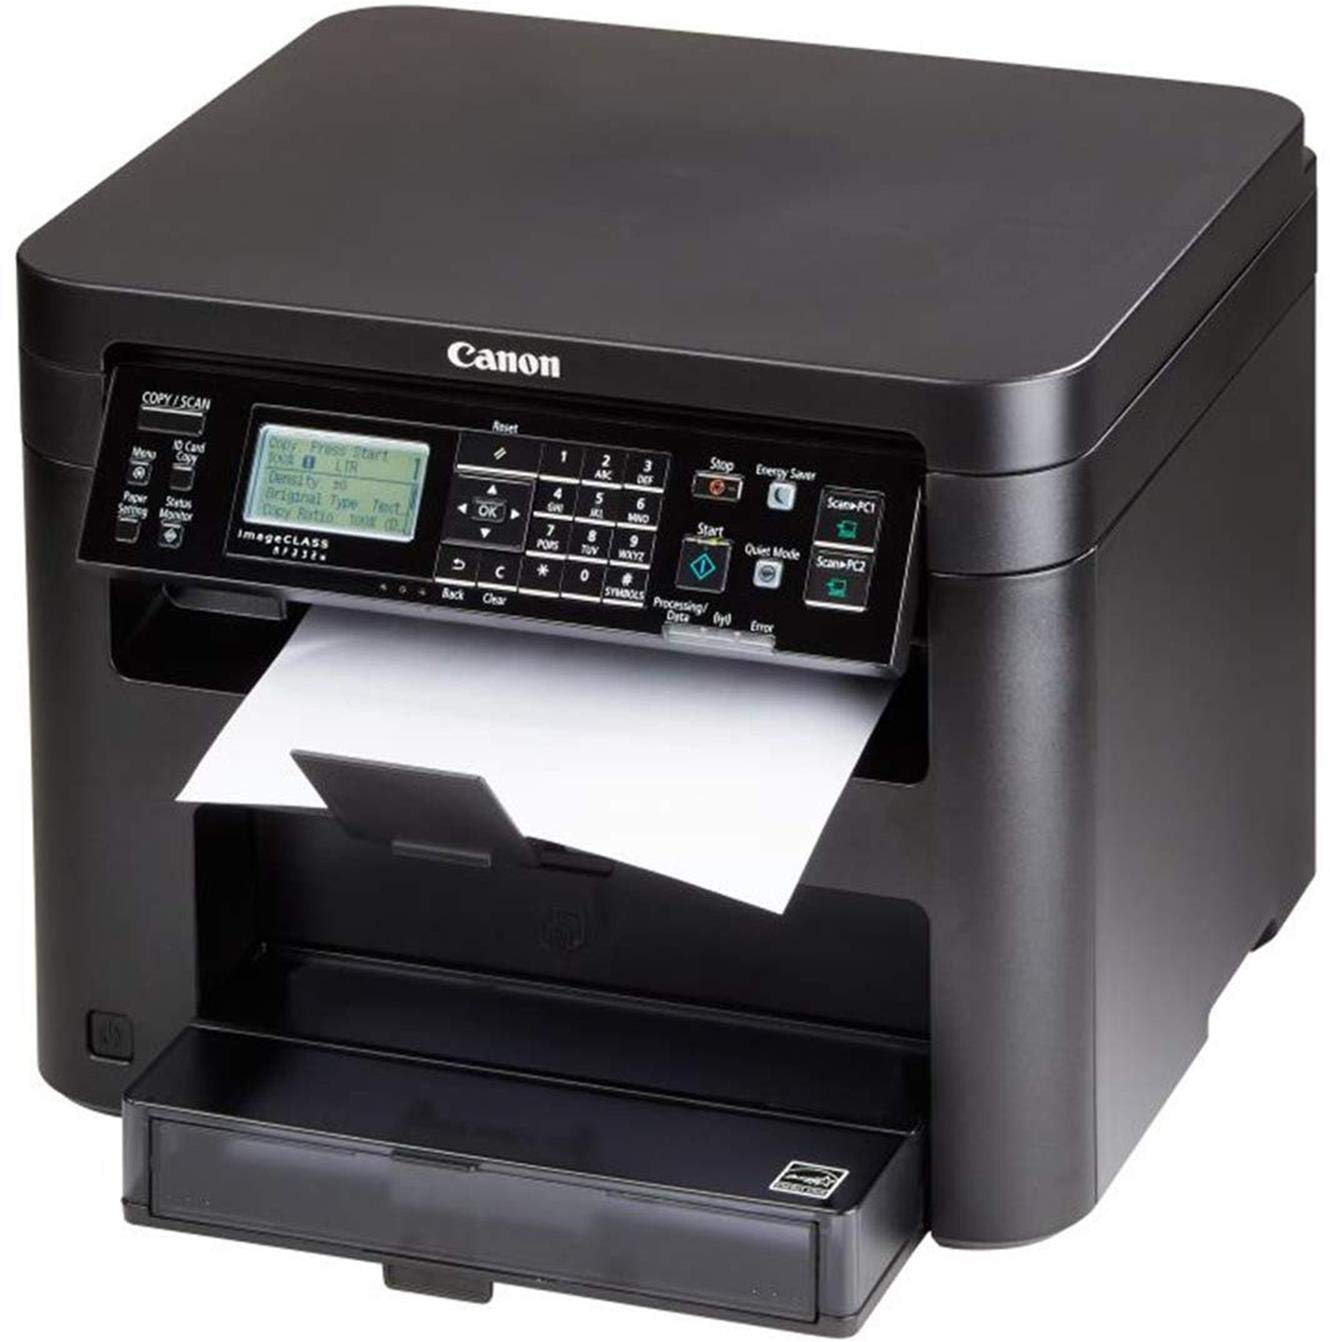 Canon imageCLASS MF232w All-in-one Laser Wi-Fi Monochrome Printer (Black)